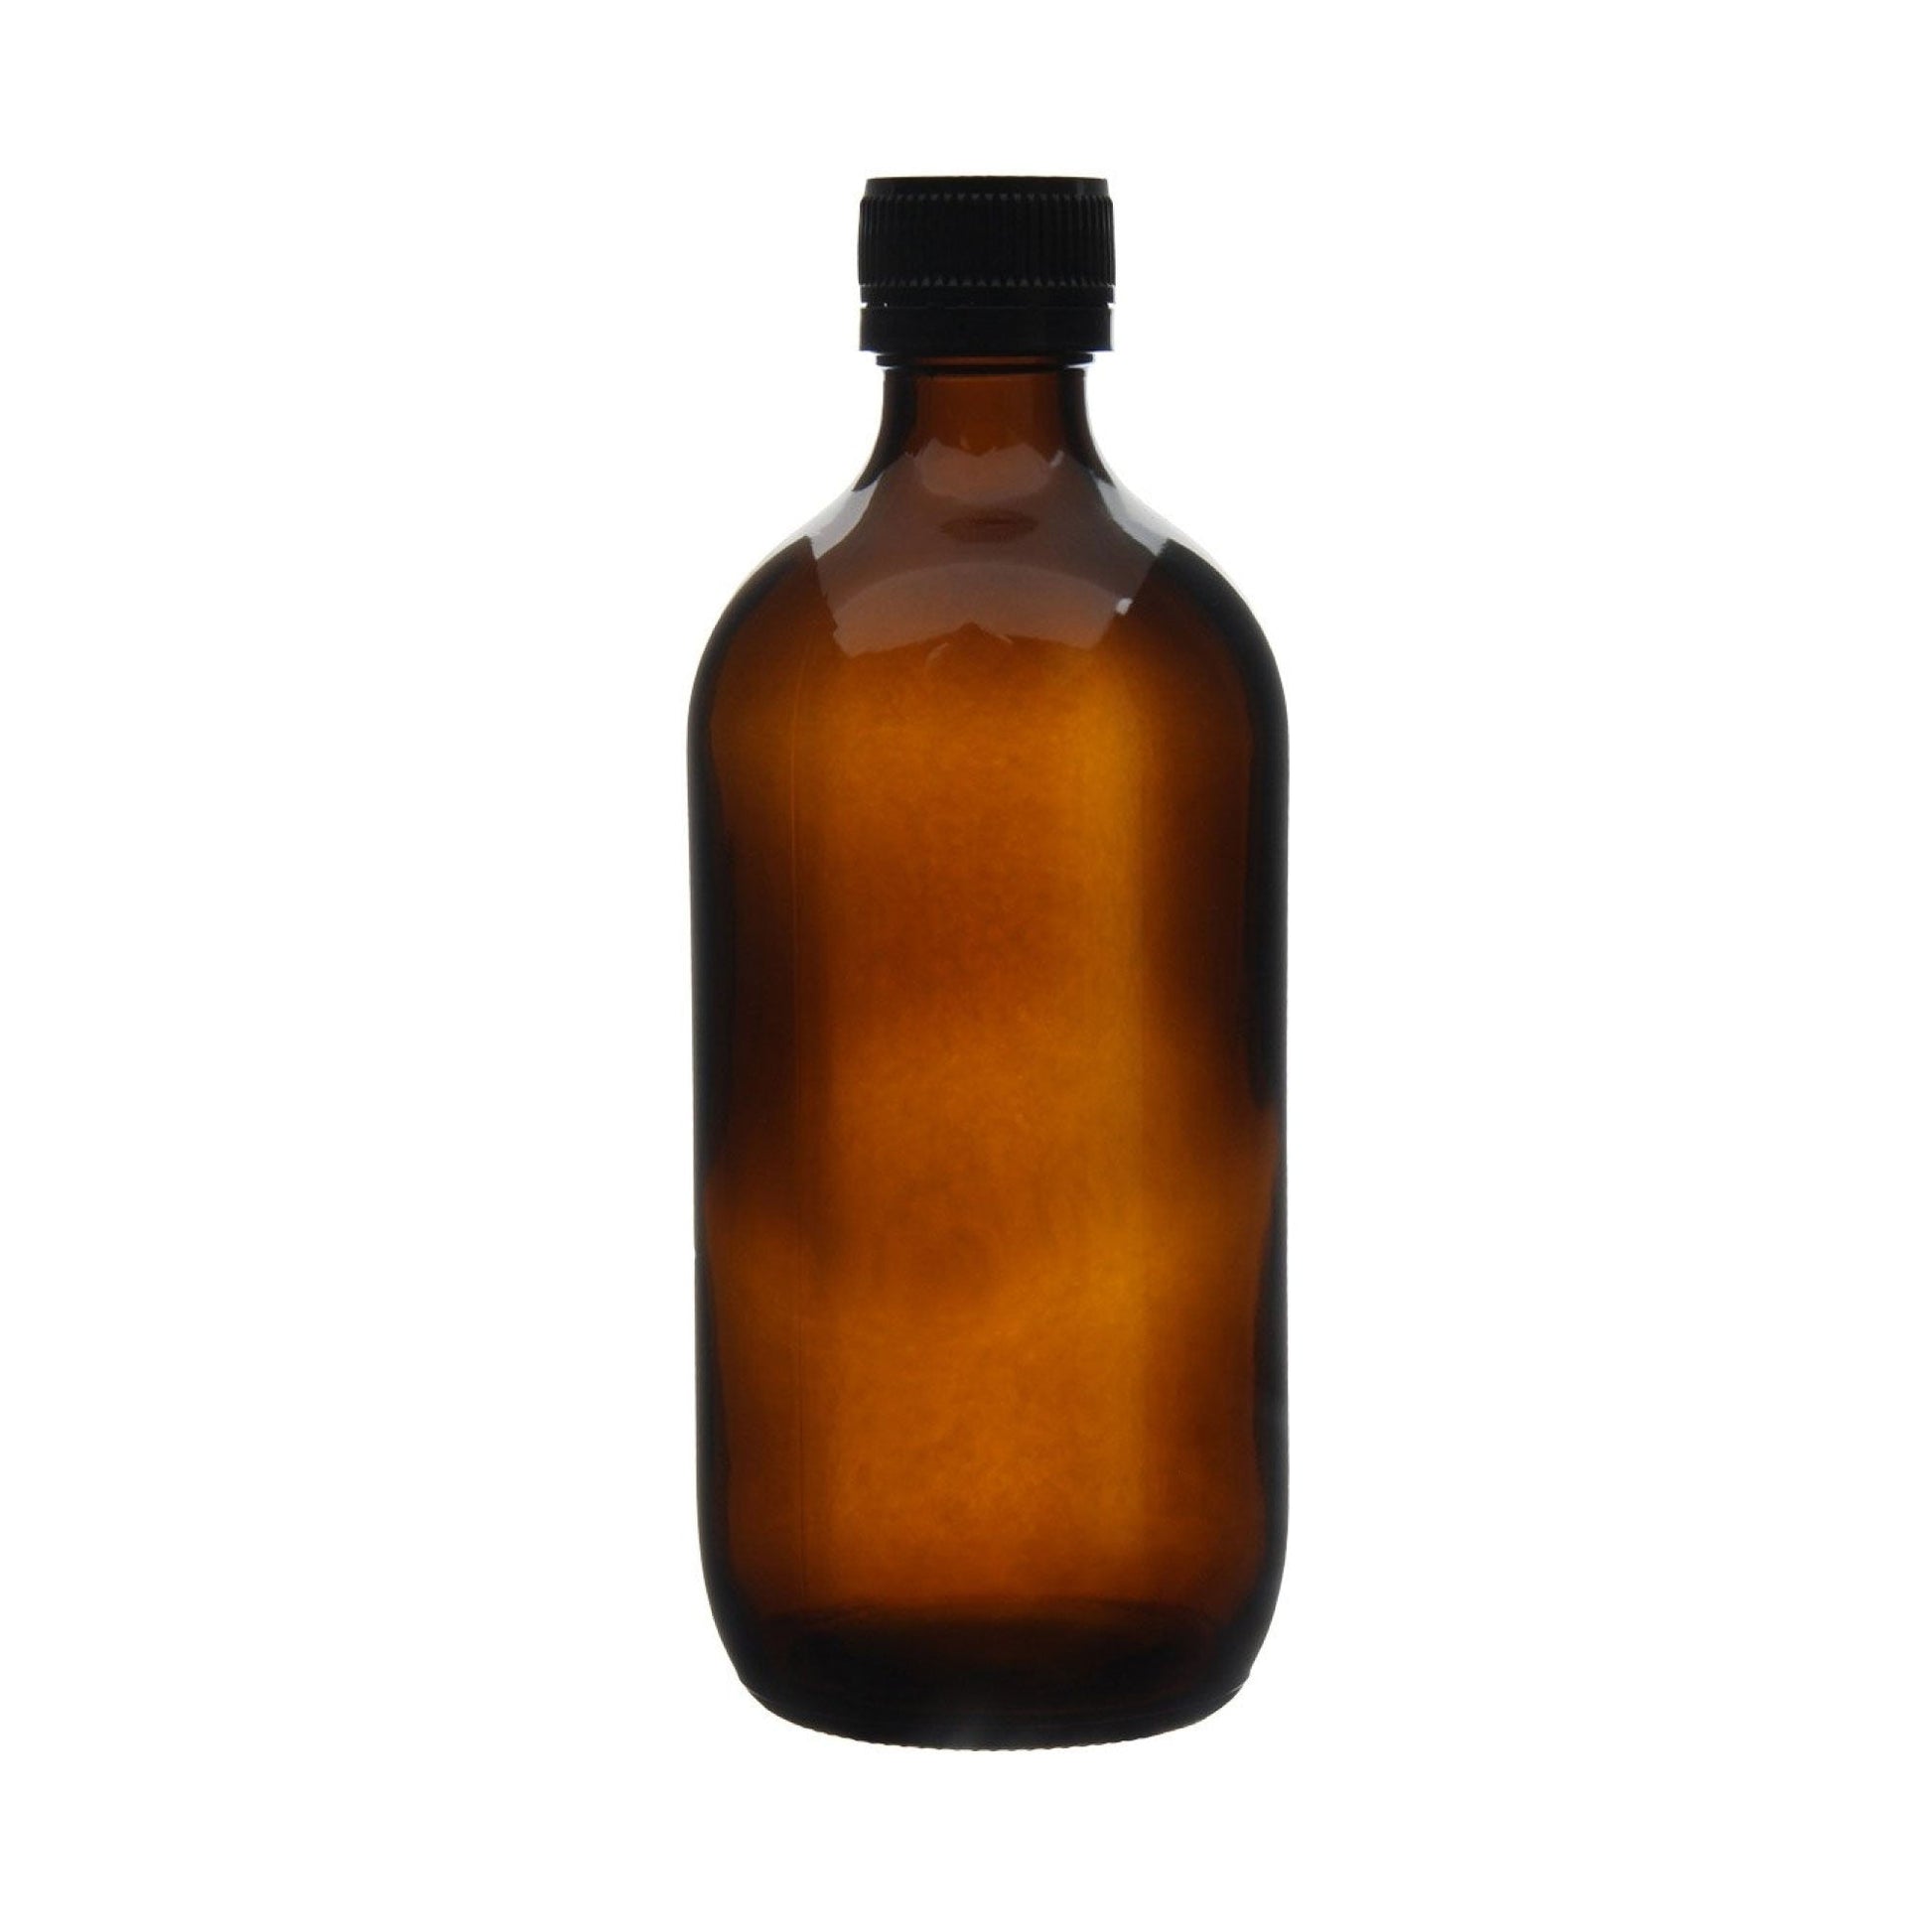 25x 500ml Amber Glass Bottles + Tamper Evident Cap - Empty Essential Oil - Bulk